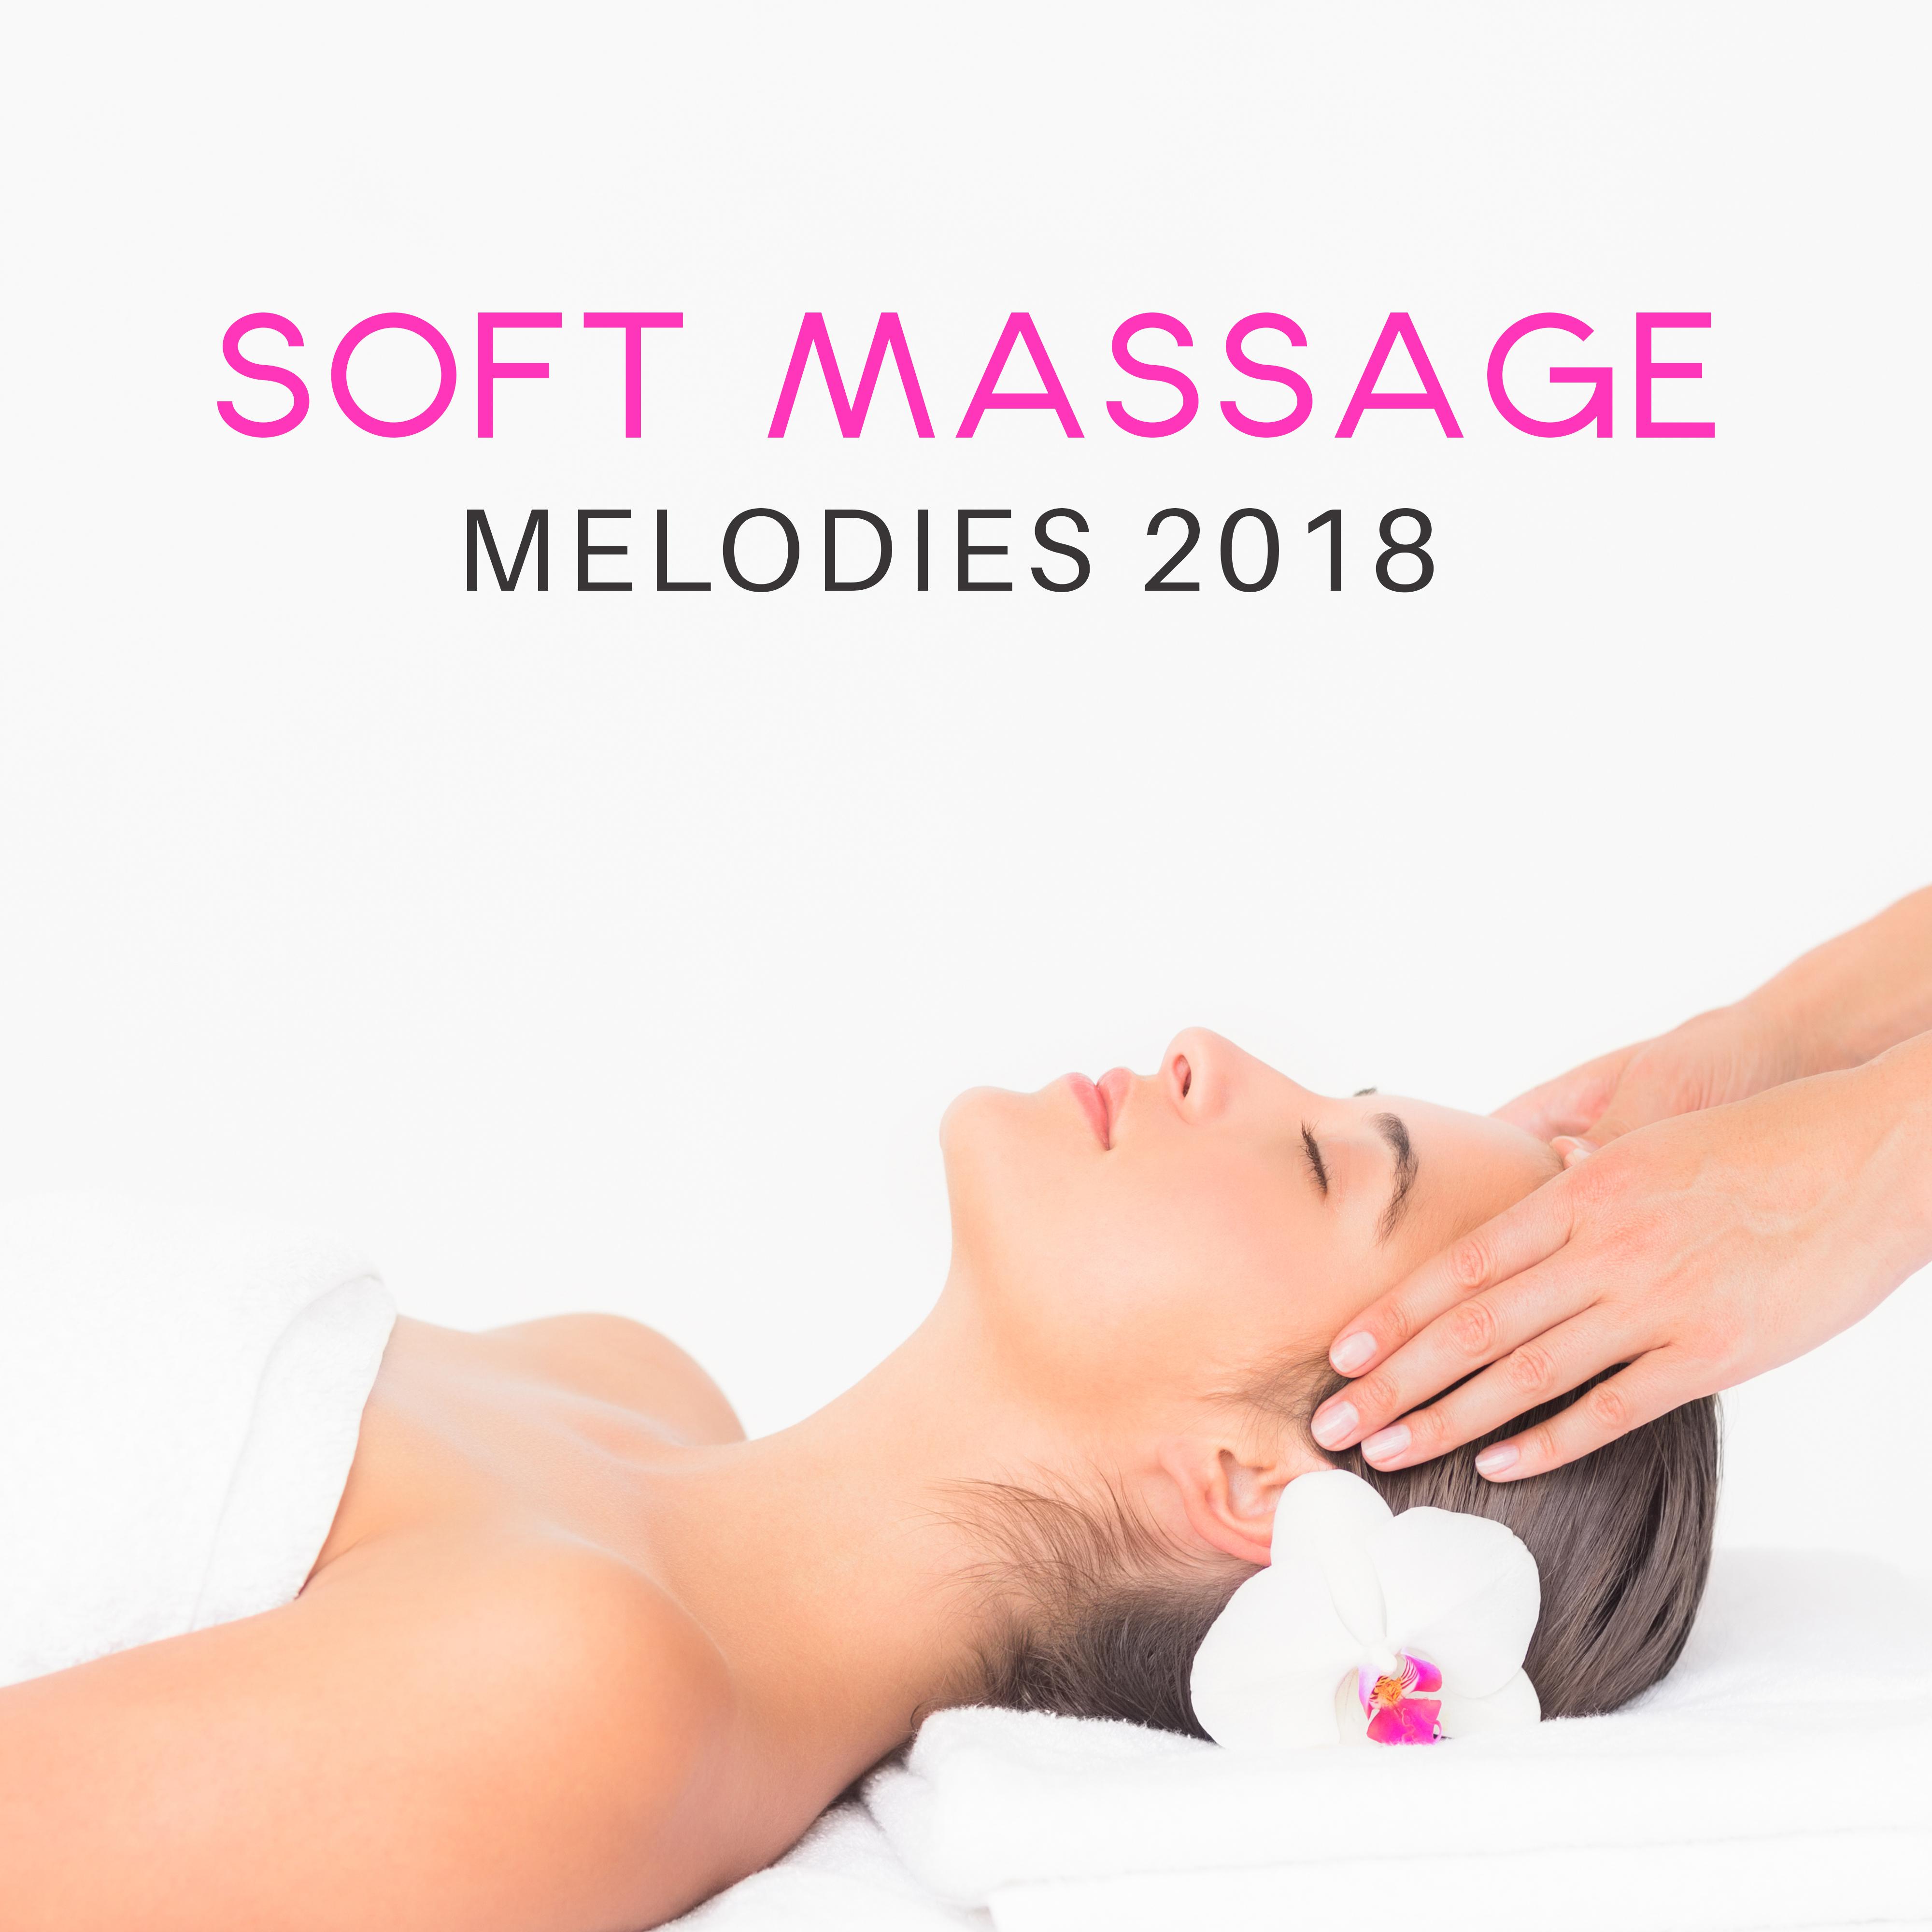 Soft Massage Melodies 2018